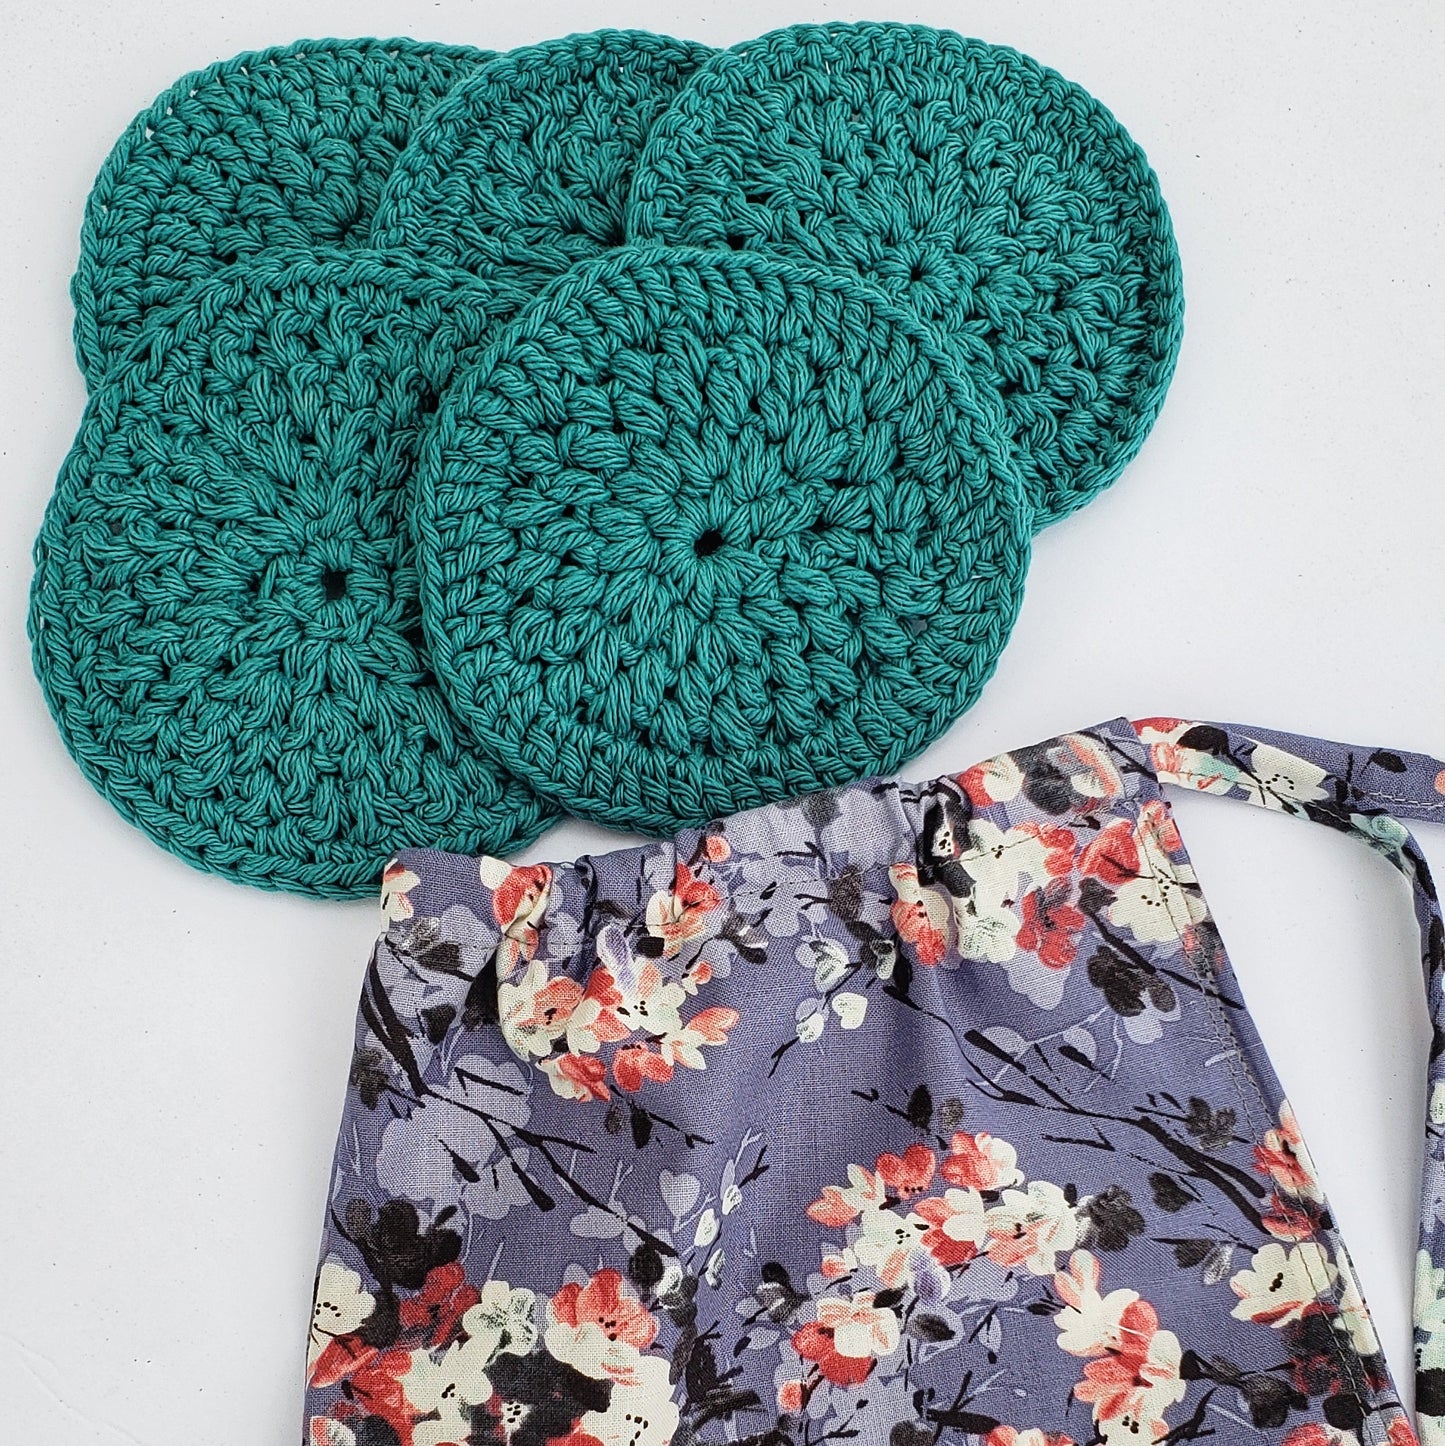 Five crochet scrubbies